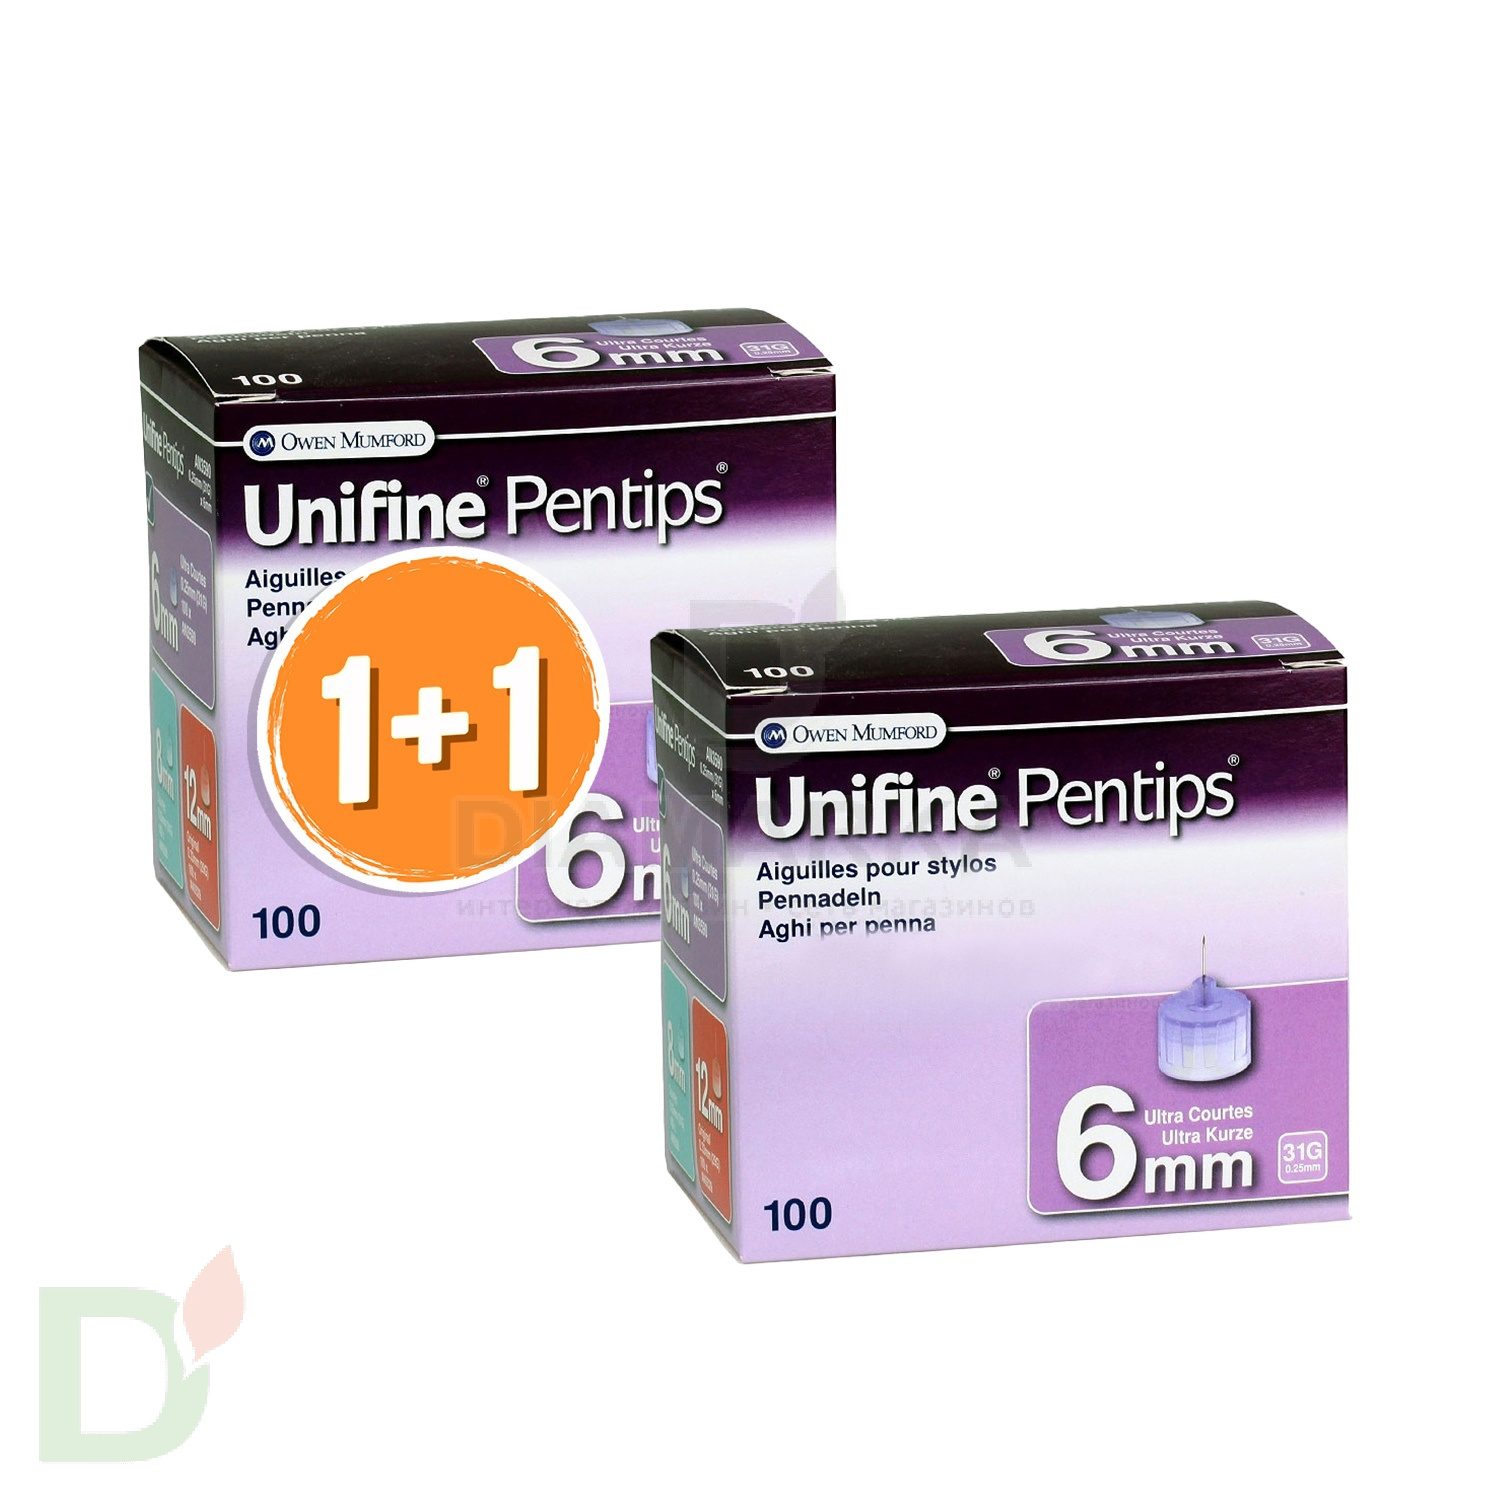 Иглы Юнифайн (Unifine Pentips) 31G 6 мм для шприц-ручек, 100 штук + 100 штук В ПОДАРОК!